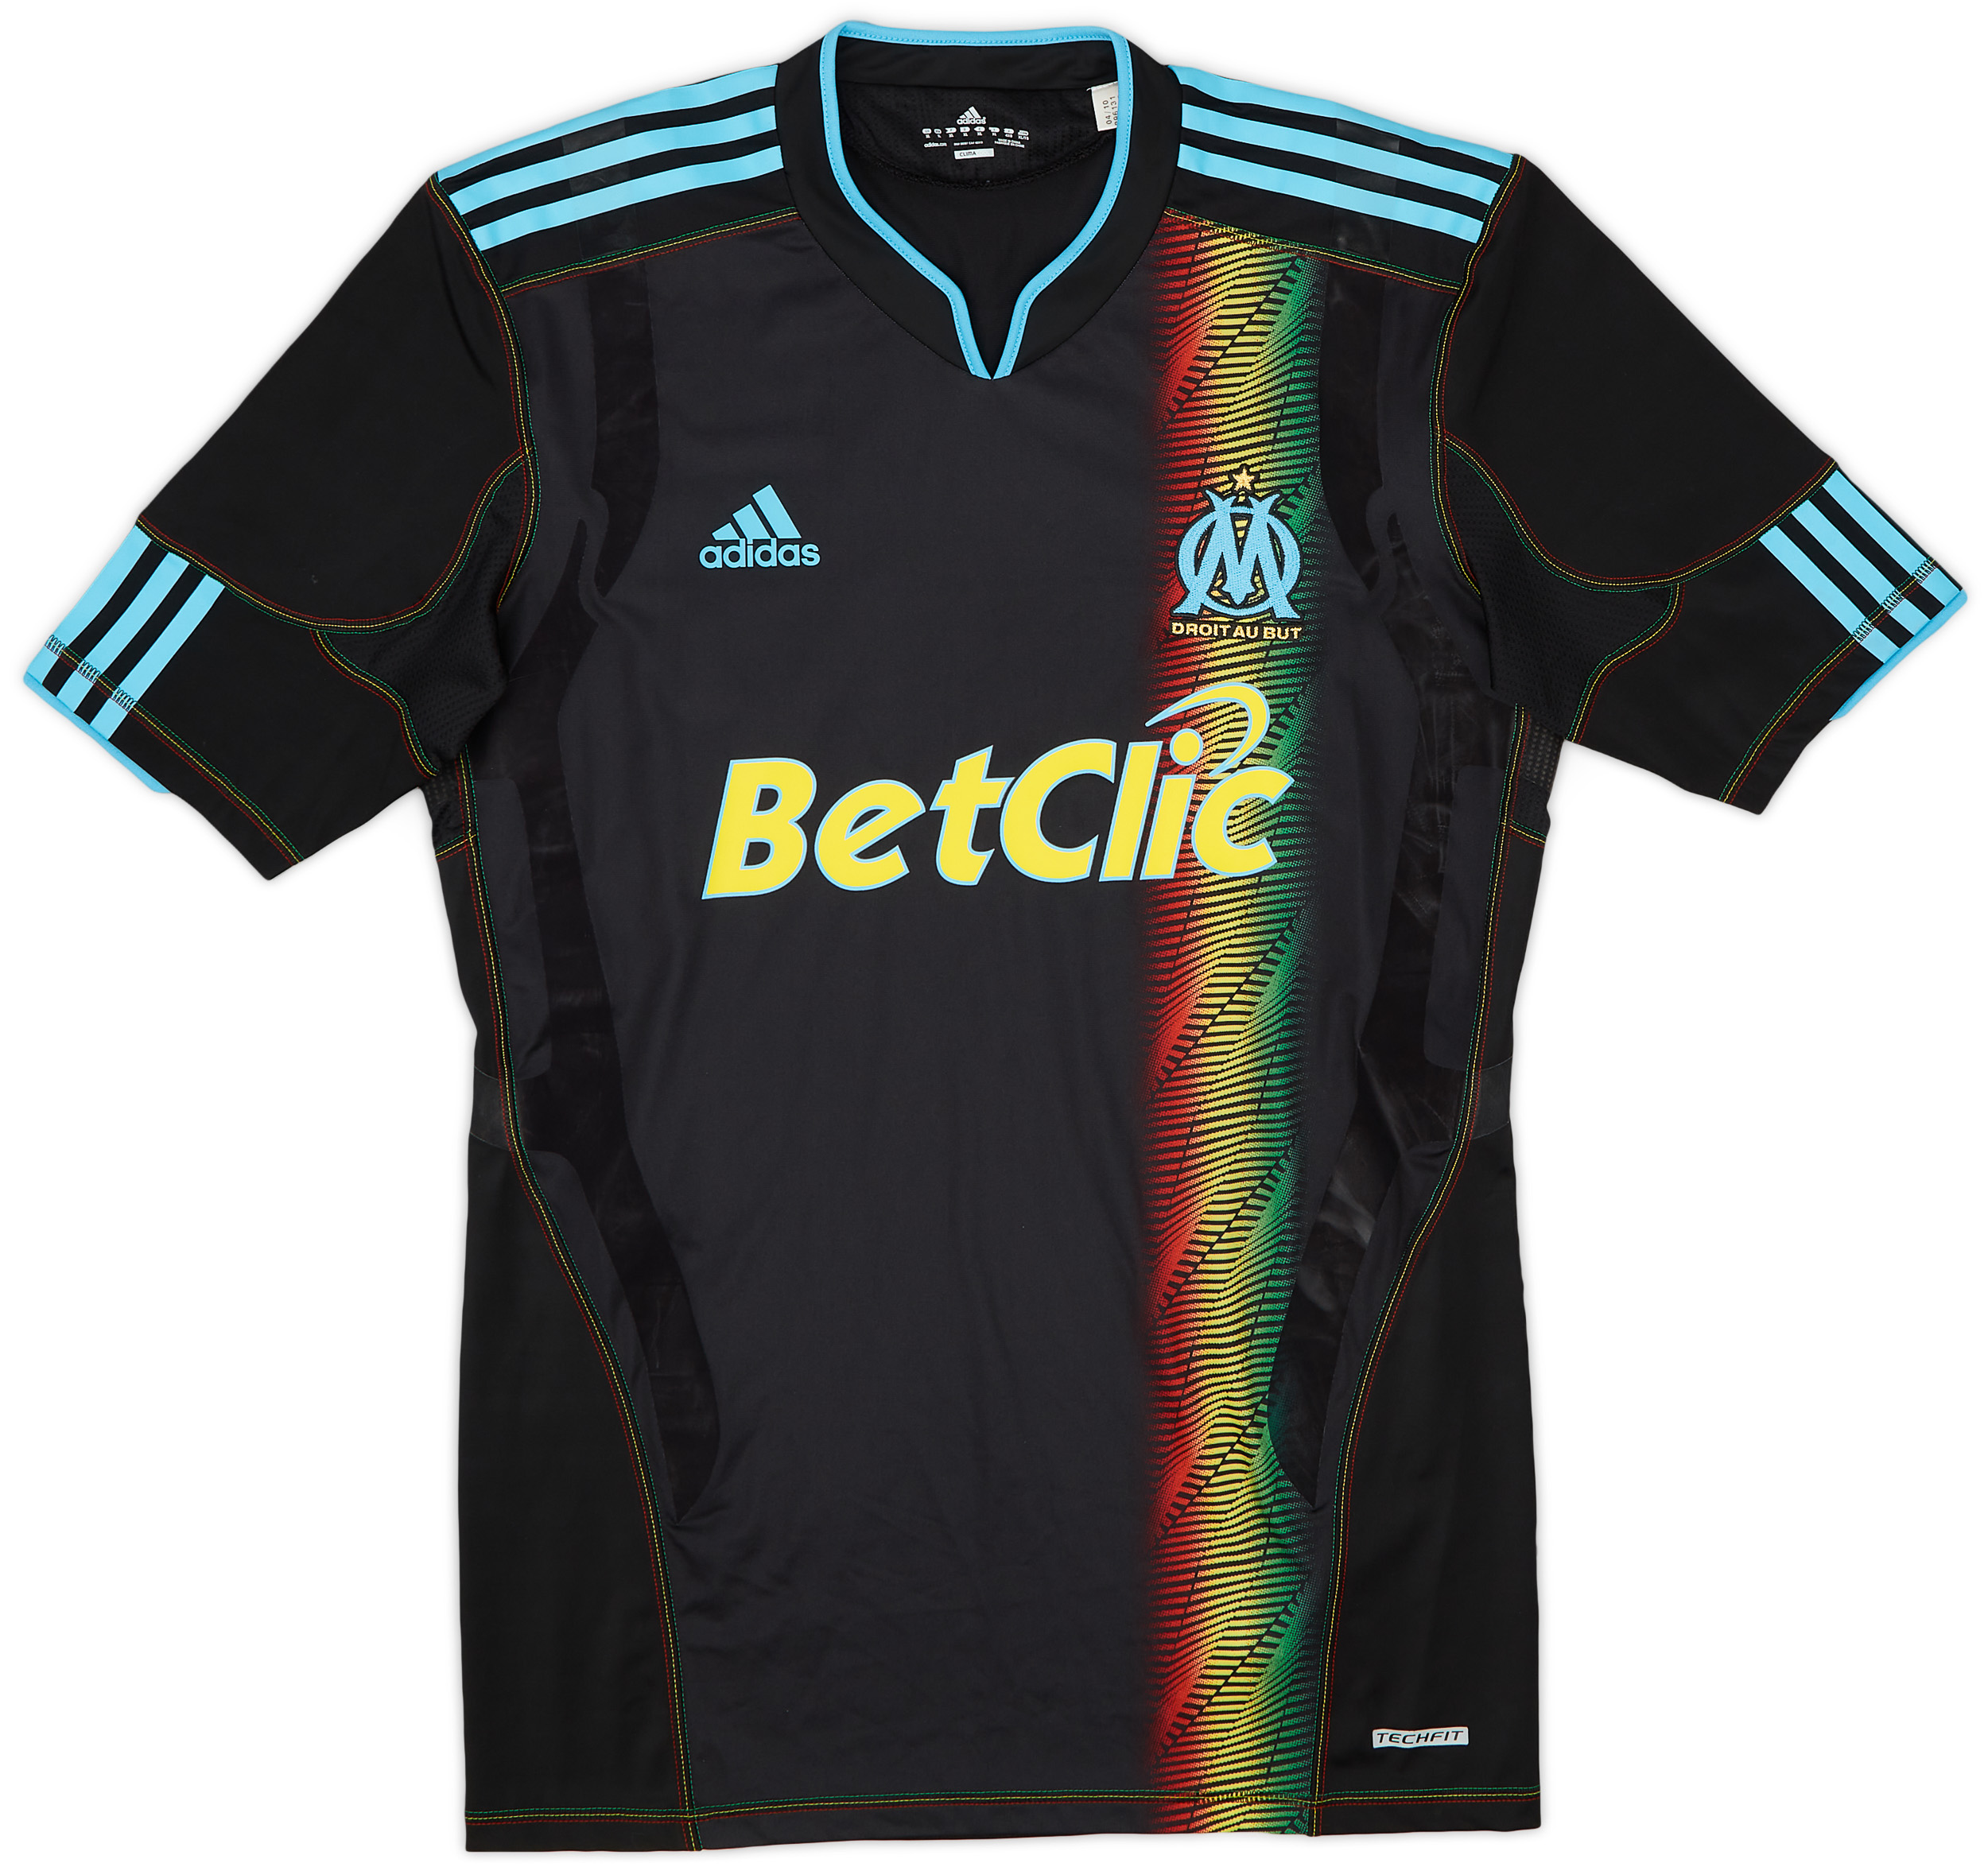 Olympique Marseille  Terceira camisa (Original)